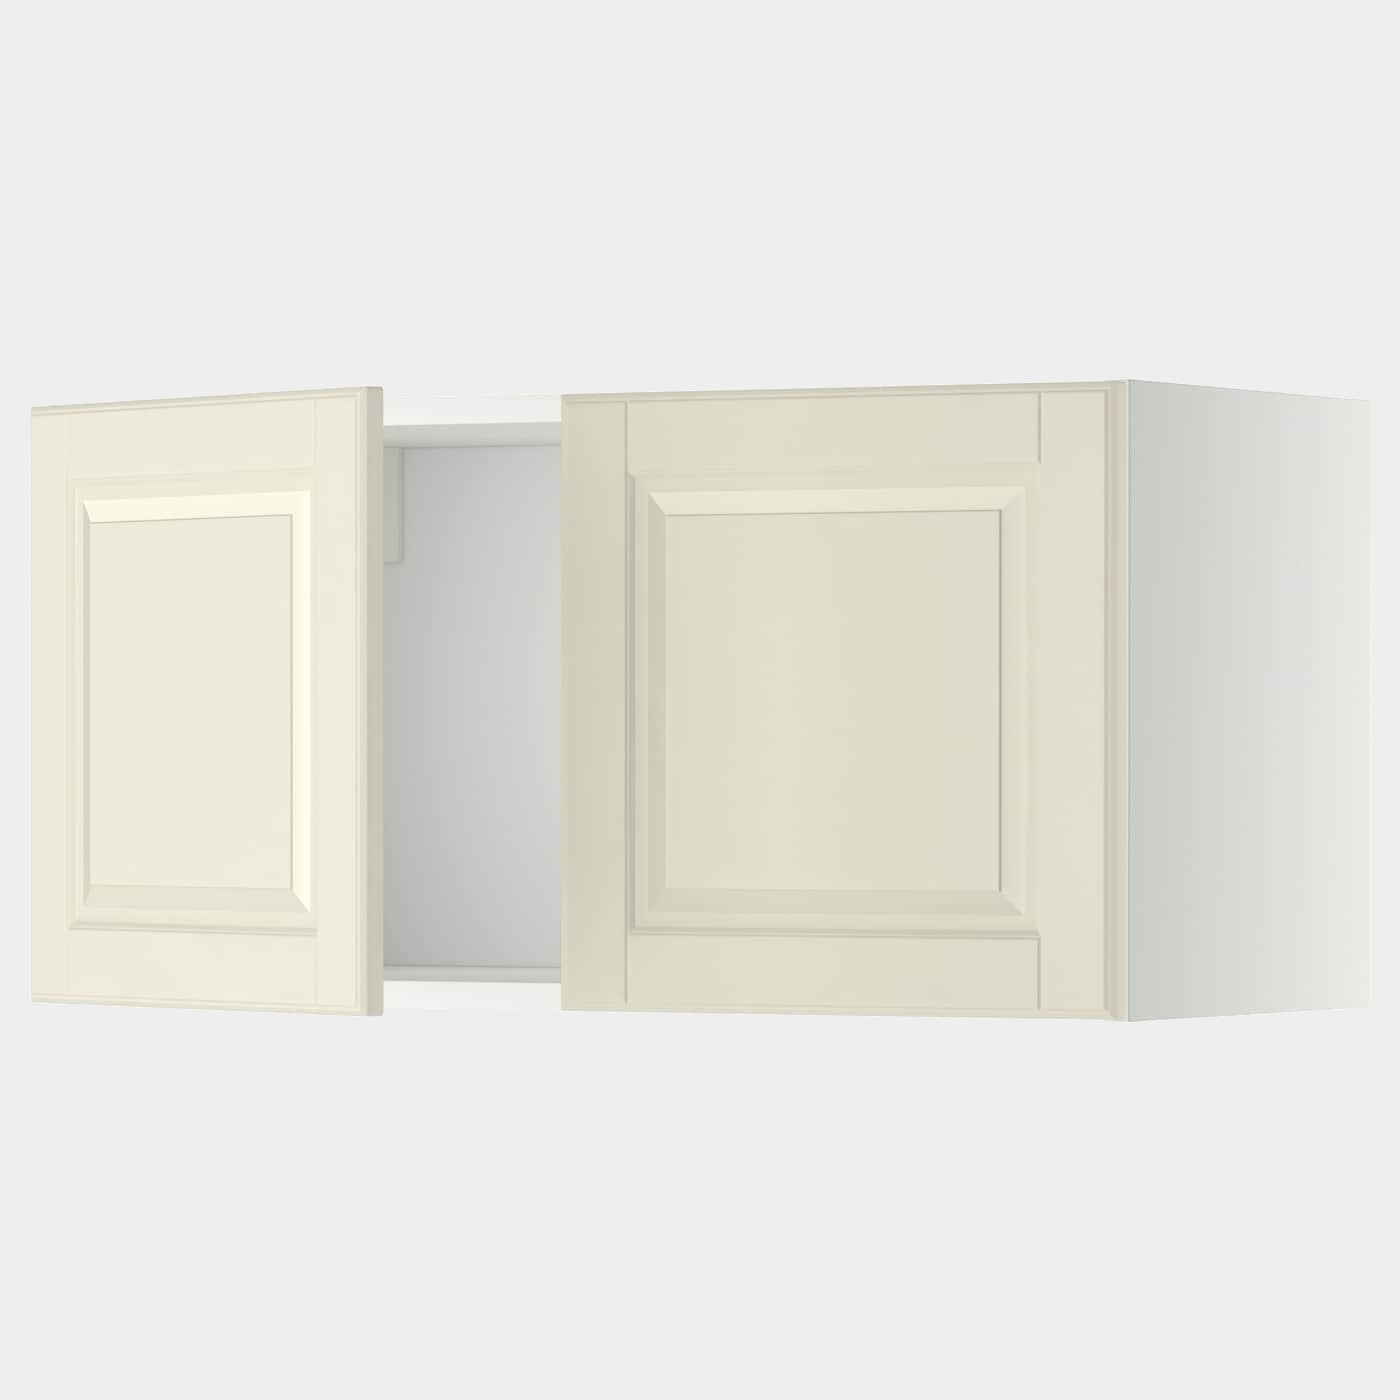 METOD Wandschrank mit 2 Türen  - Oberschränke - Küchen & Elektrogeräte Ideen für dein Zuhause von Home Trends. Küchen & Elektrogeräte Trends von Social Media Influencer für dein Skandi Zuhause.